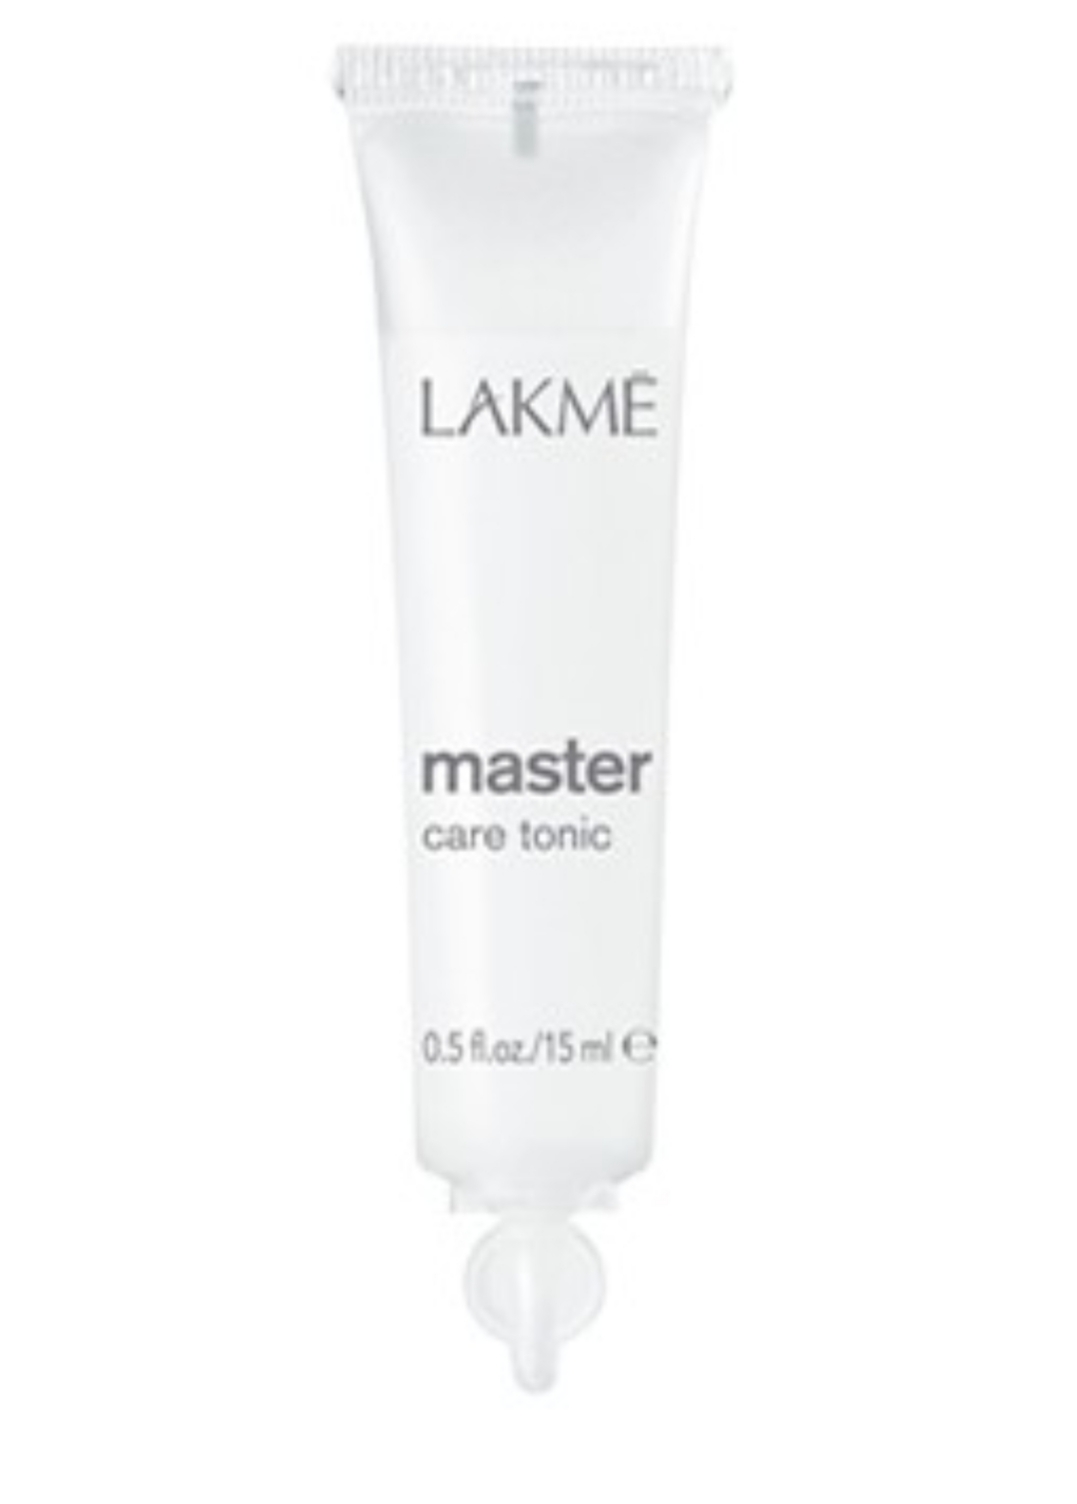 فراورده های حالت دهنده ،نرم کننده وتثبیت کننده آرایش مو (کرمها ، لوسیونها وروغنها) LAKME Master Care Tonic 100ml